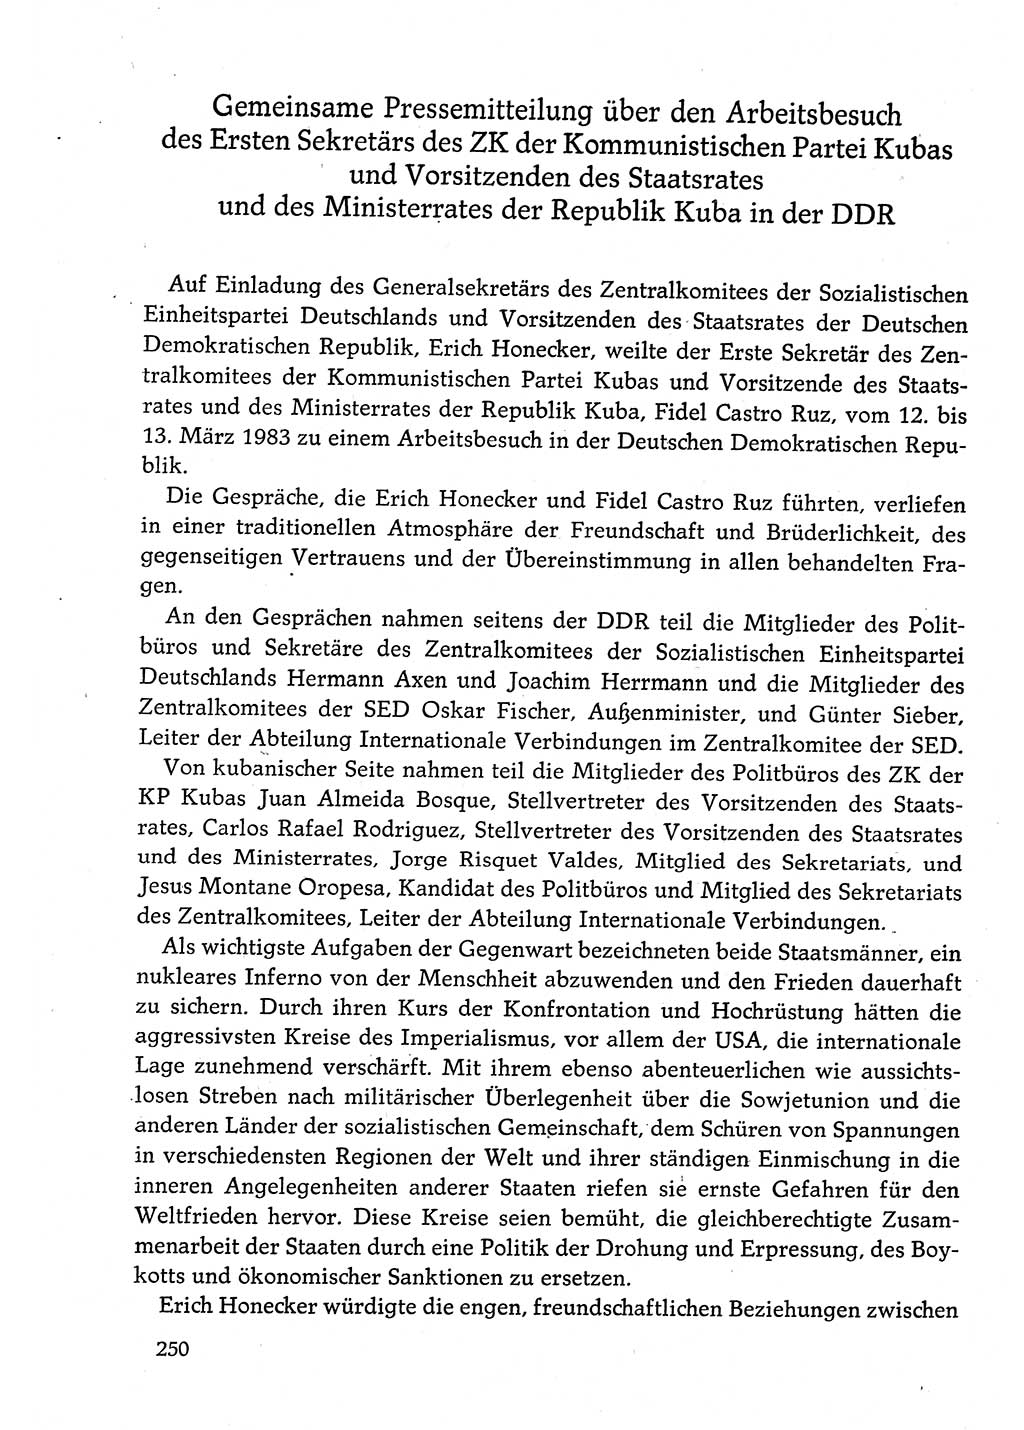 Dokumente der Sozialistischen Einheitspartei Deutschlands (SED) [Deutsche Demokratische Republik (DDR)] 1982-1983, Seite 250 (Dok. SED DDR 1982-1983, S. 250)